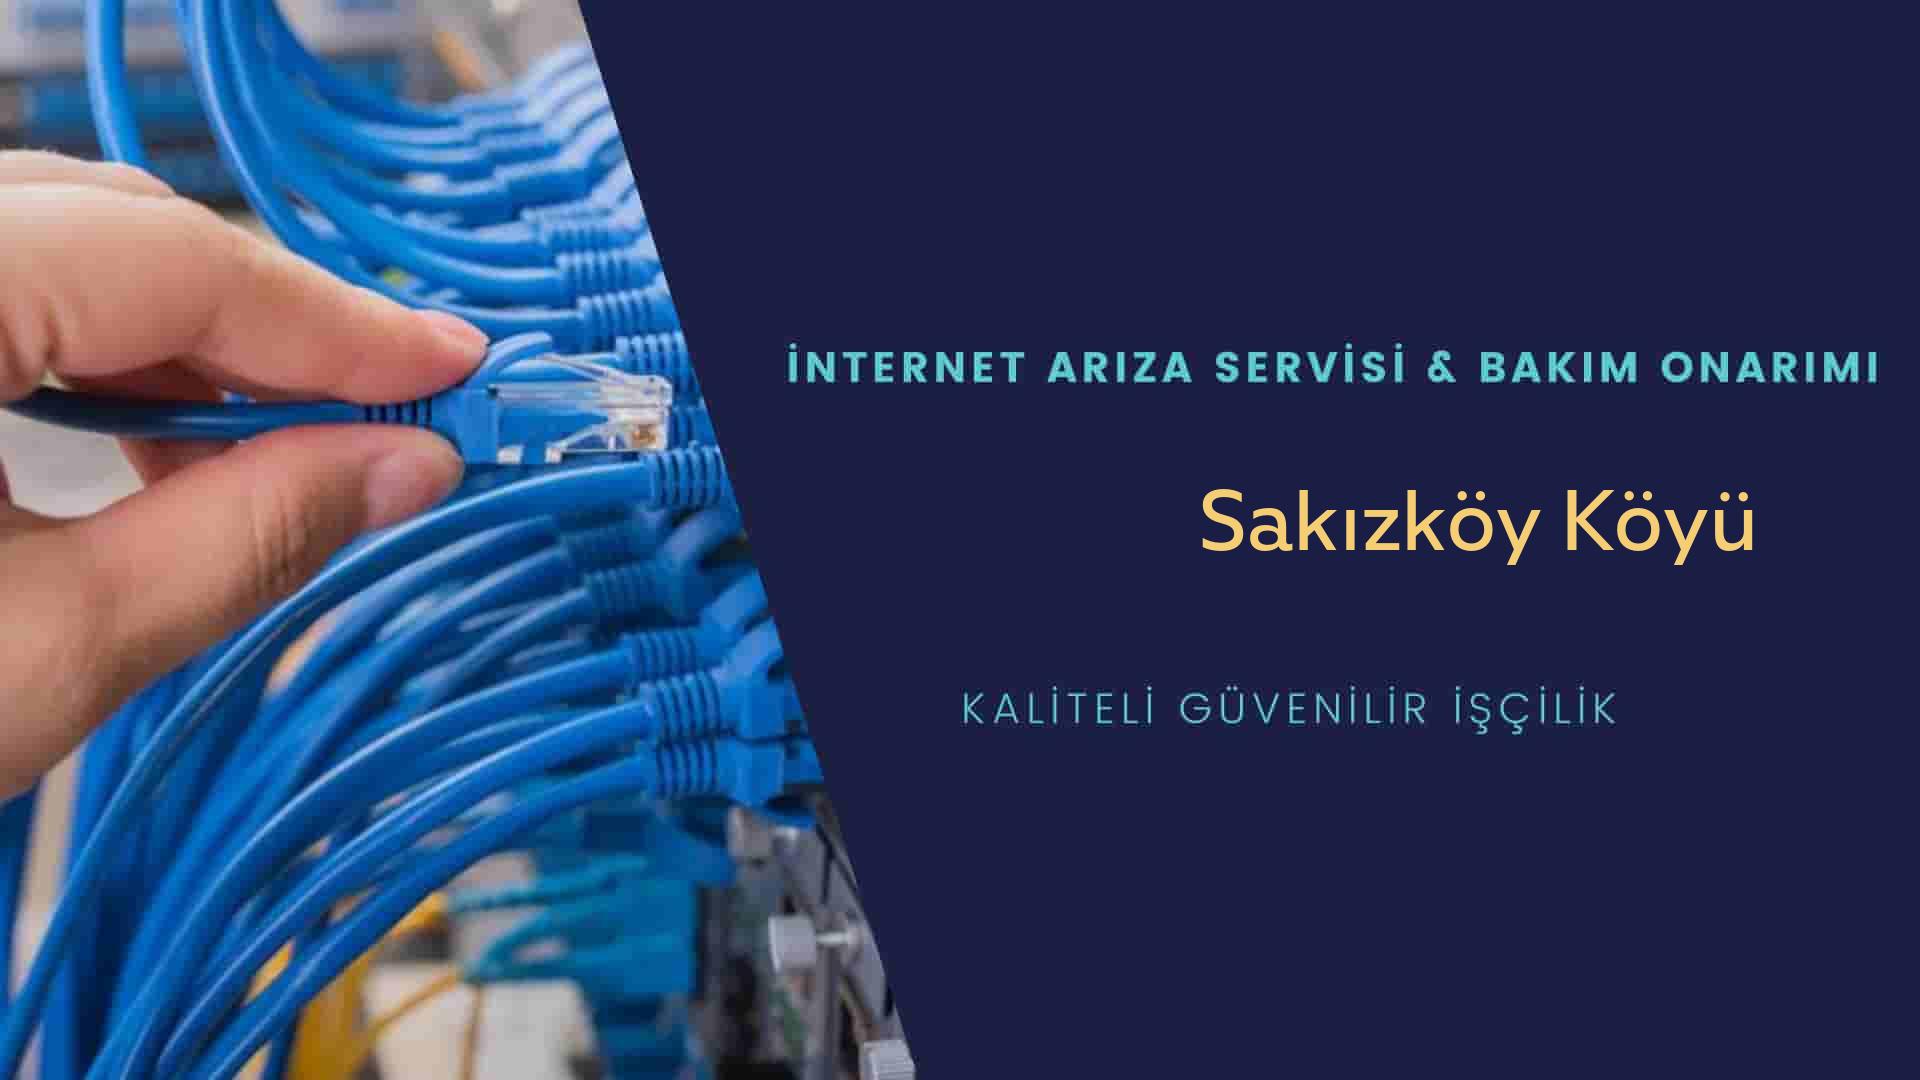 Sakızköy Köyü internet kablosu çekimi yapan yerler veya elektrikçiler mi? arıyorsunuz doğru yerdesiniz o zaman sizlere 7/24 yardımcı olacak profesyonel ustalarımız bir telefon kadar yakındır size.